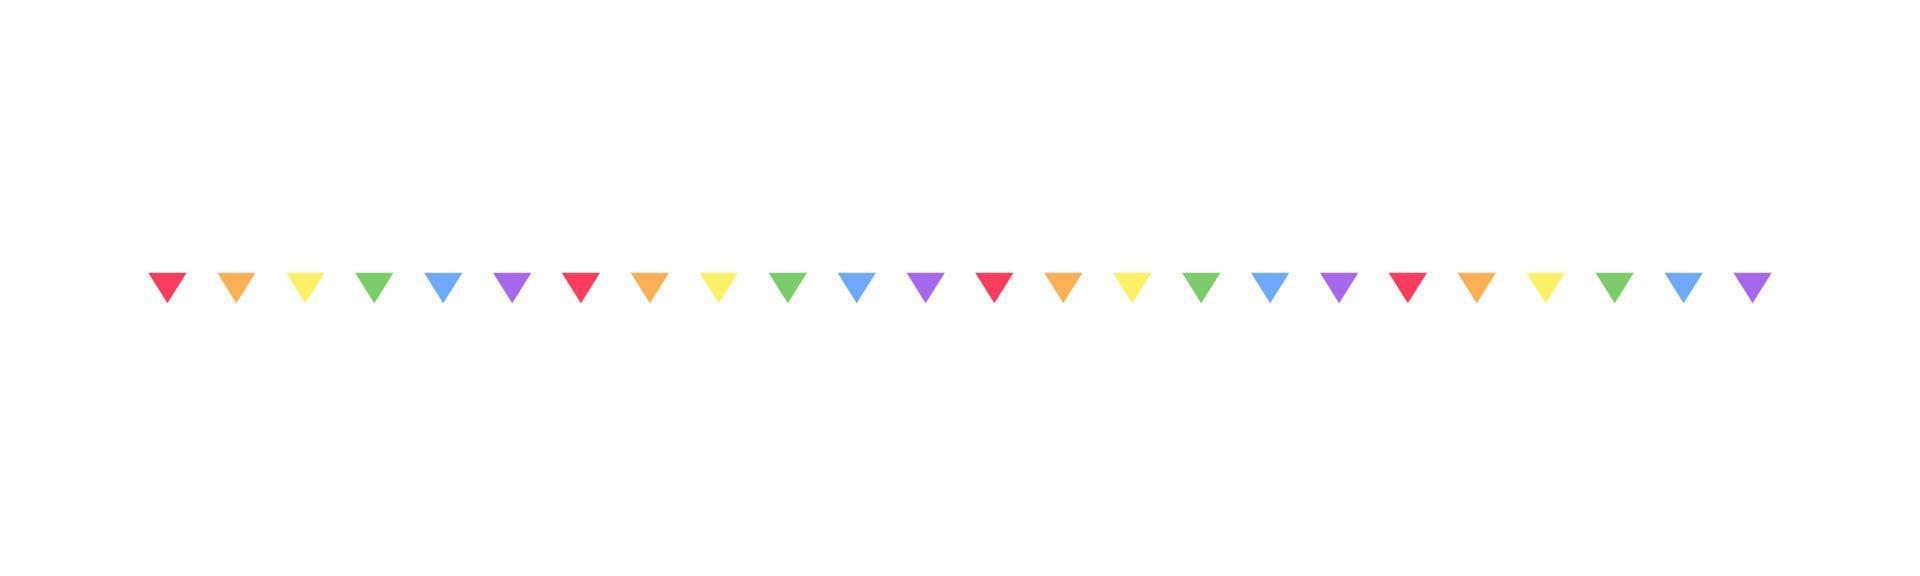 arco iris banderín garland empavesado divisor simple vector ilustración clipart